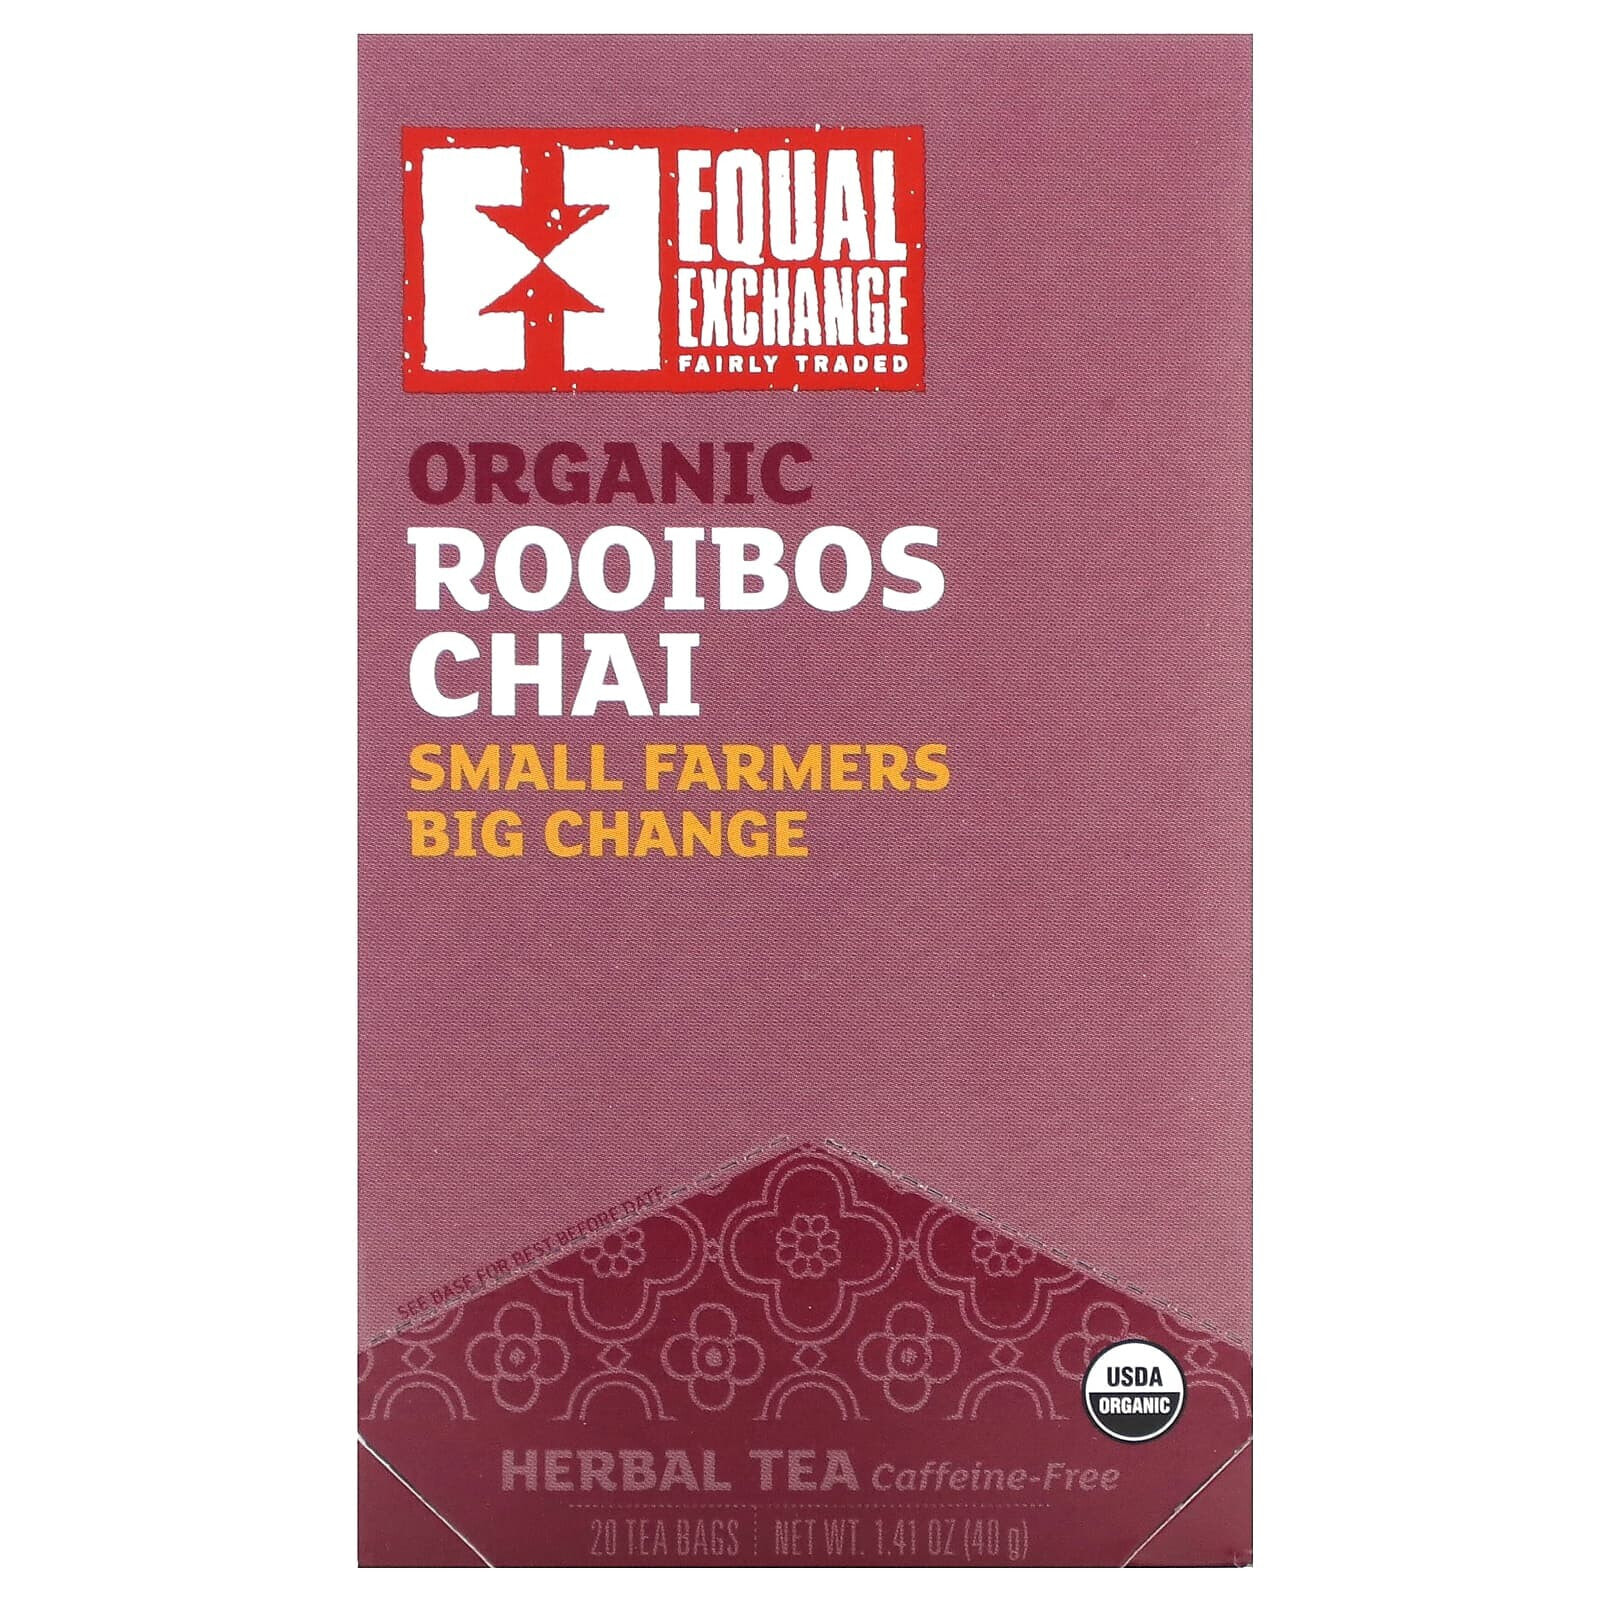 Organic Rooibos Chai, Herbal Tea, Caffeine-Free, 20 Tea Bags, 1.41 oz (40 g)